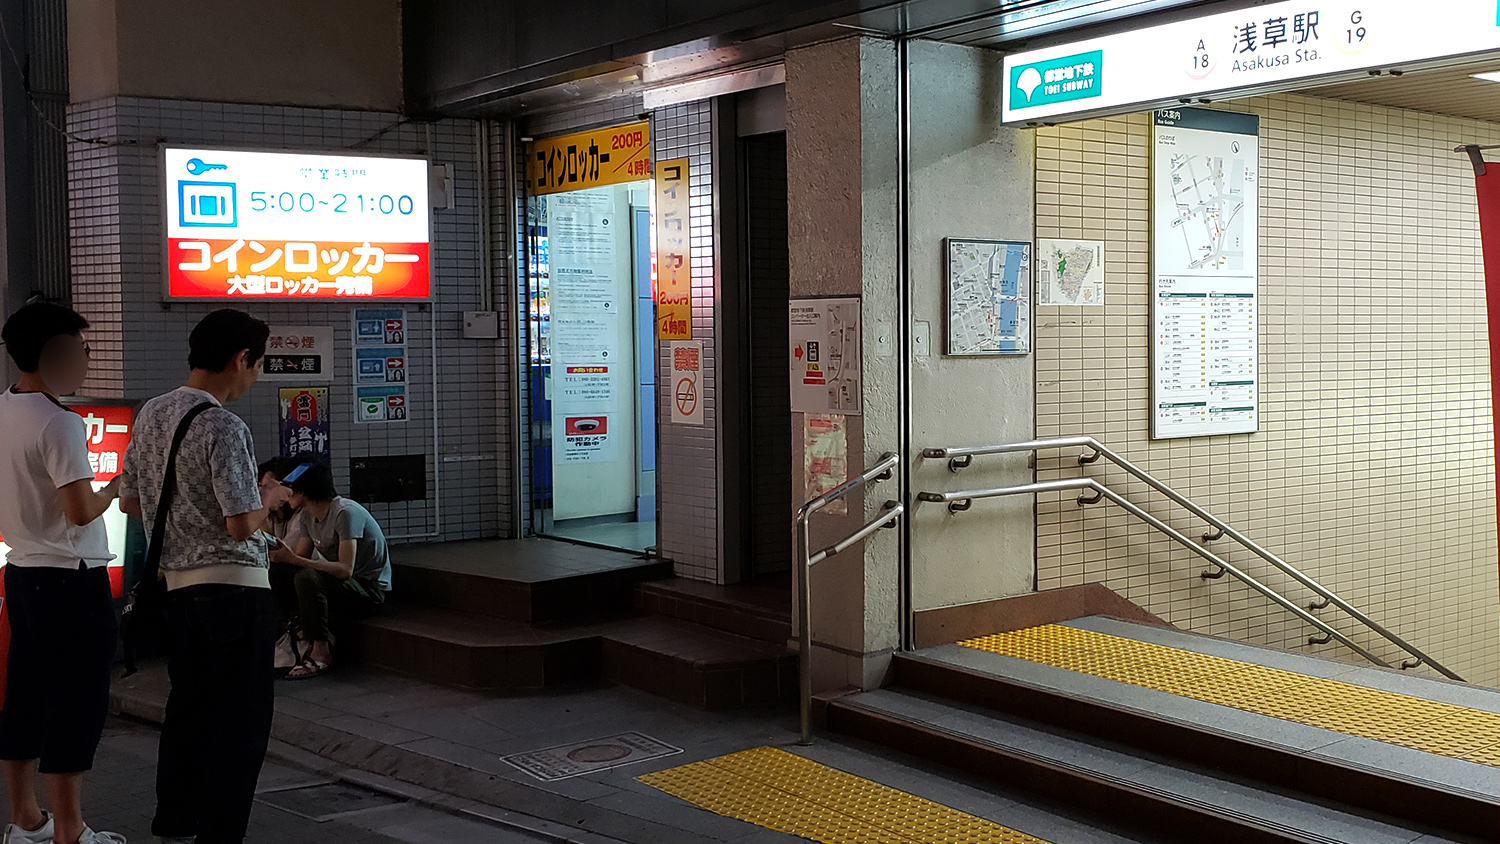 Asakusa Station/ [A18][G19]